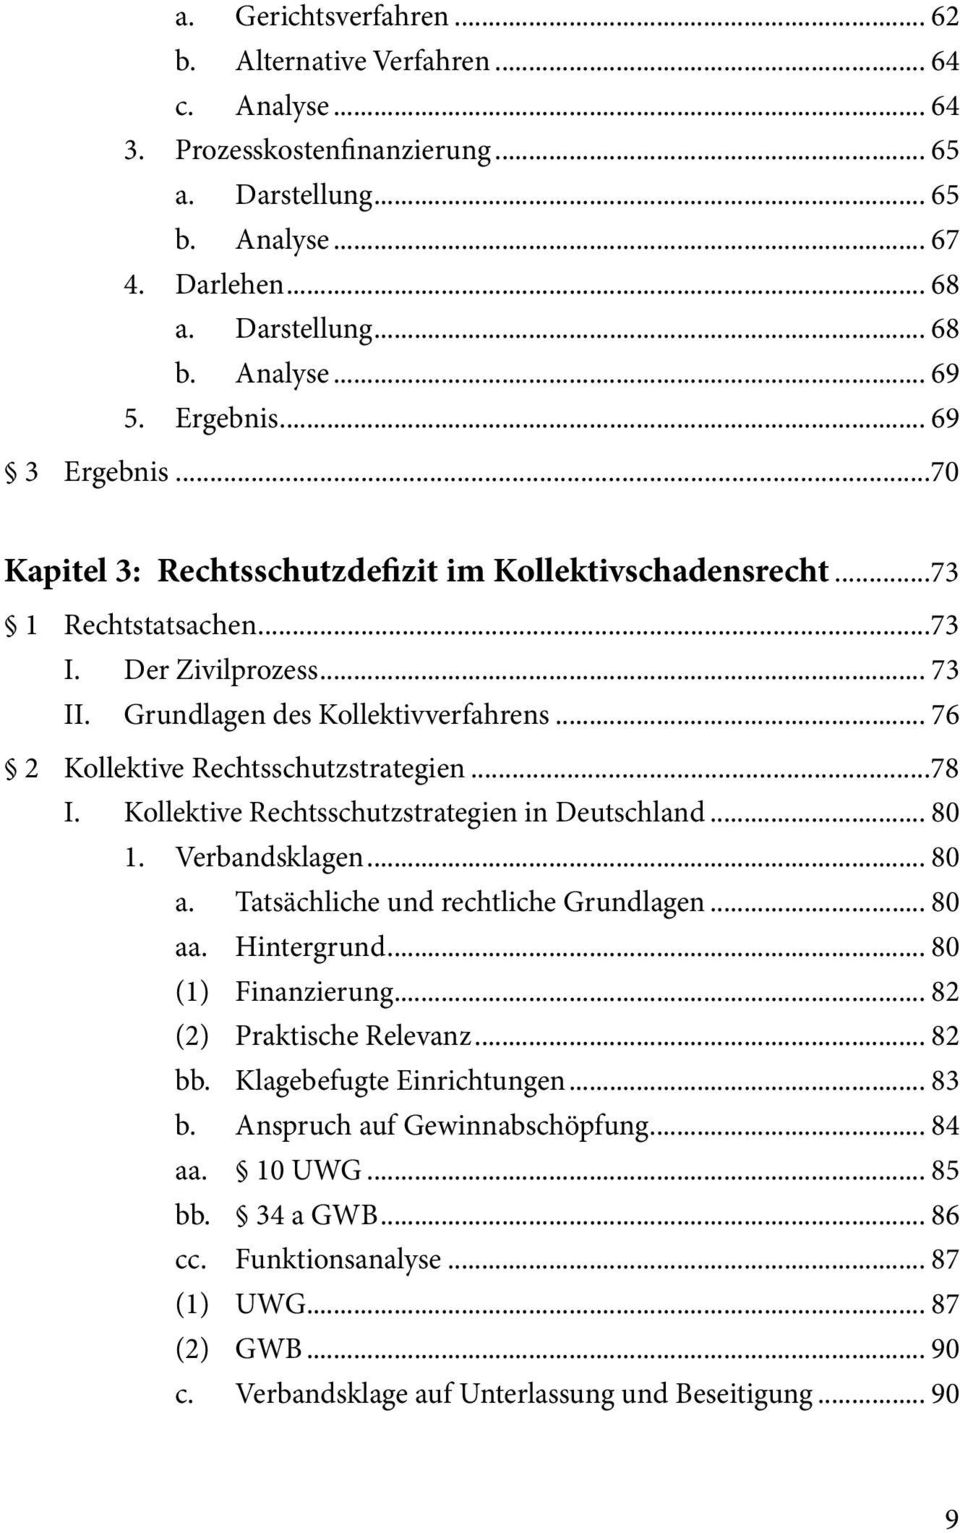 .. 76 2 Kollektive Rechtsschutzstrategien...78 I. Kollektive Rechtsschutzstrategien in Deutschland... 80 1. Verbandsklagen... 80 a. Tatsächliche und rechtliche Grundlagen... 80 aa. Hintergrund.